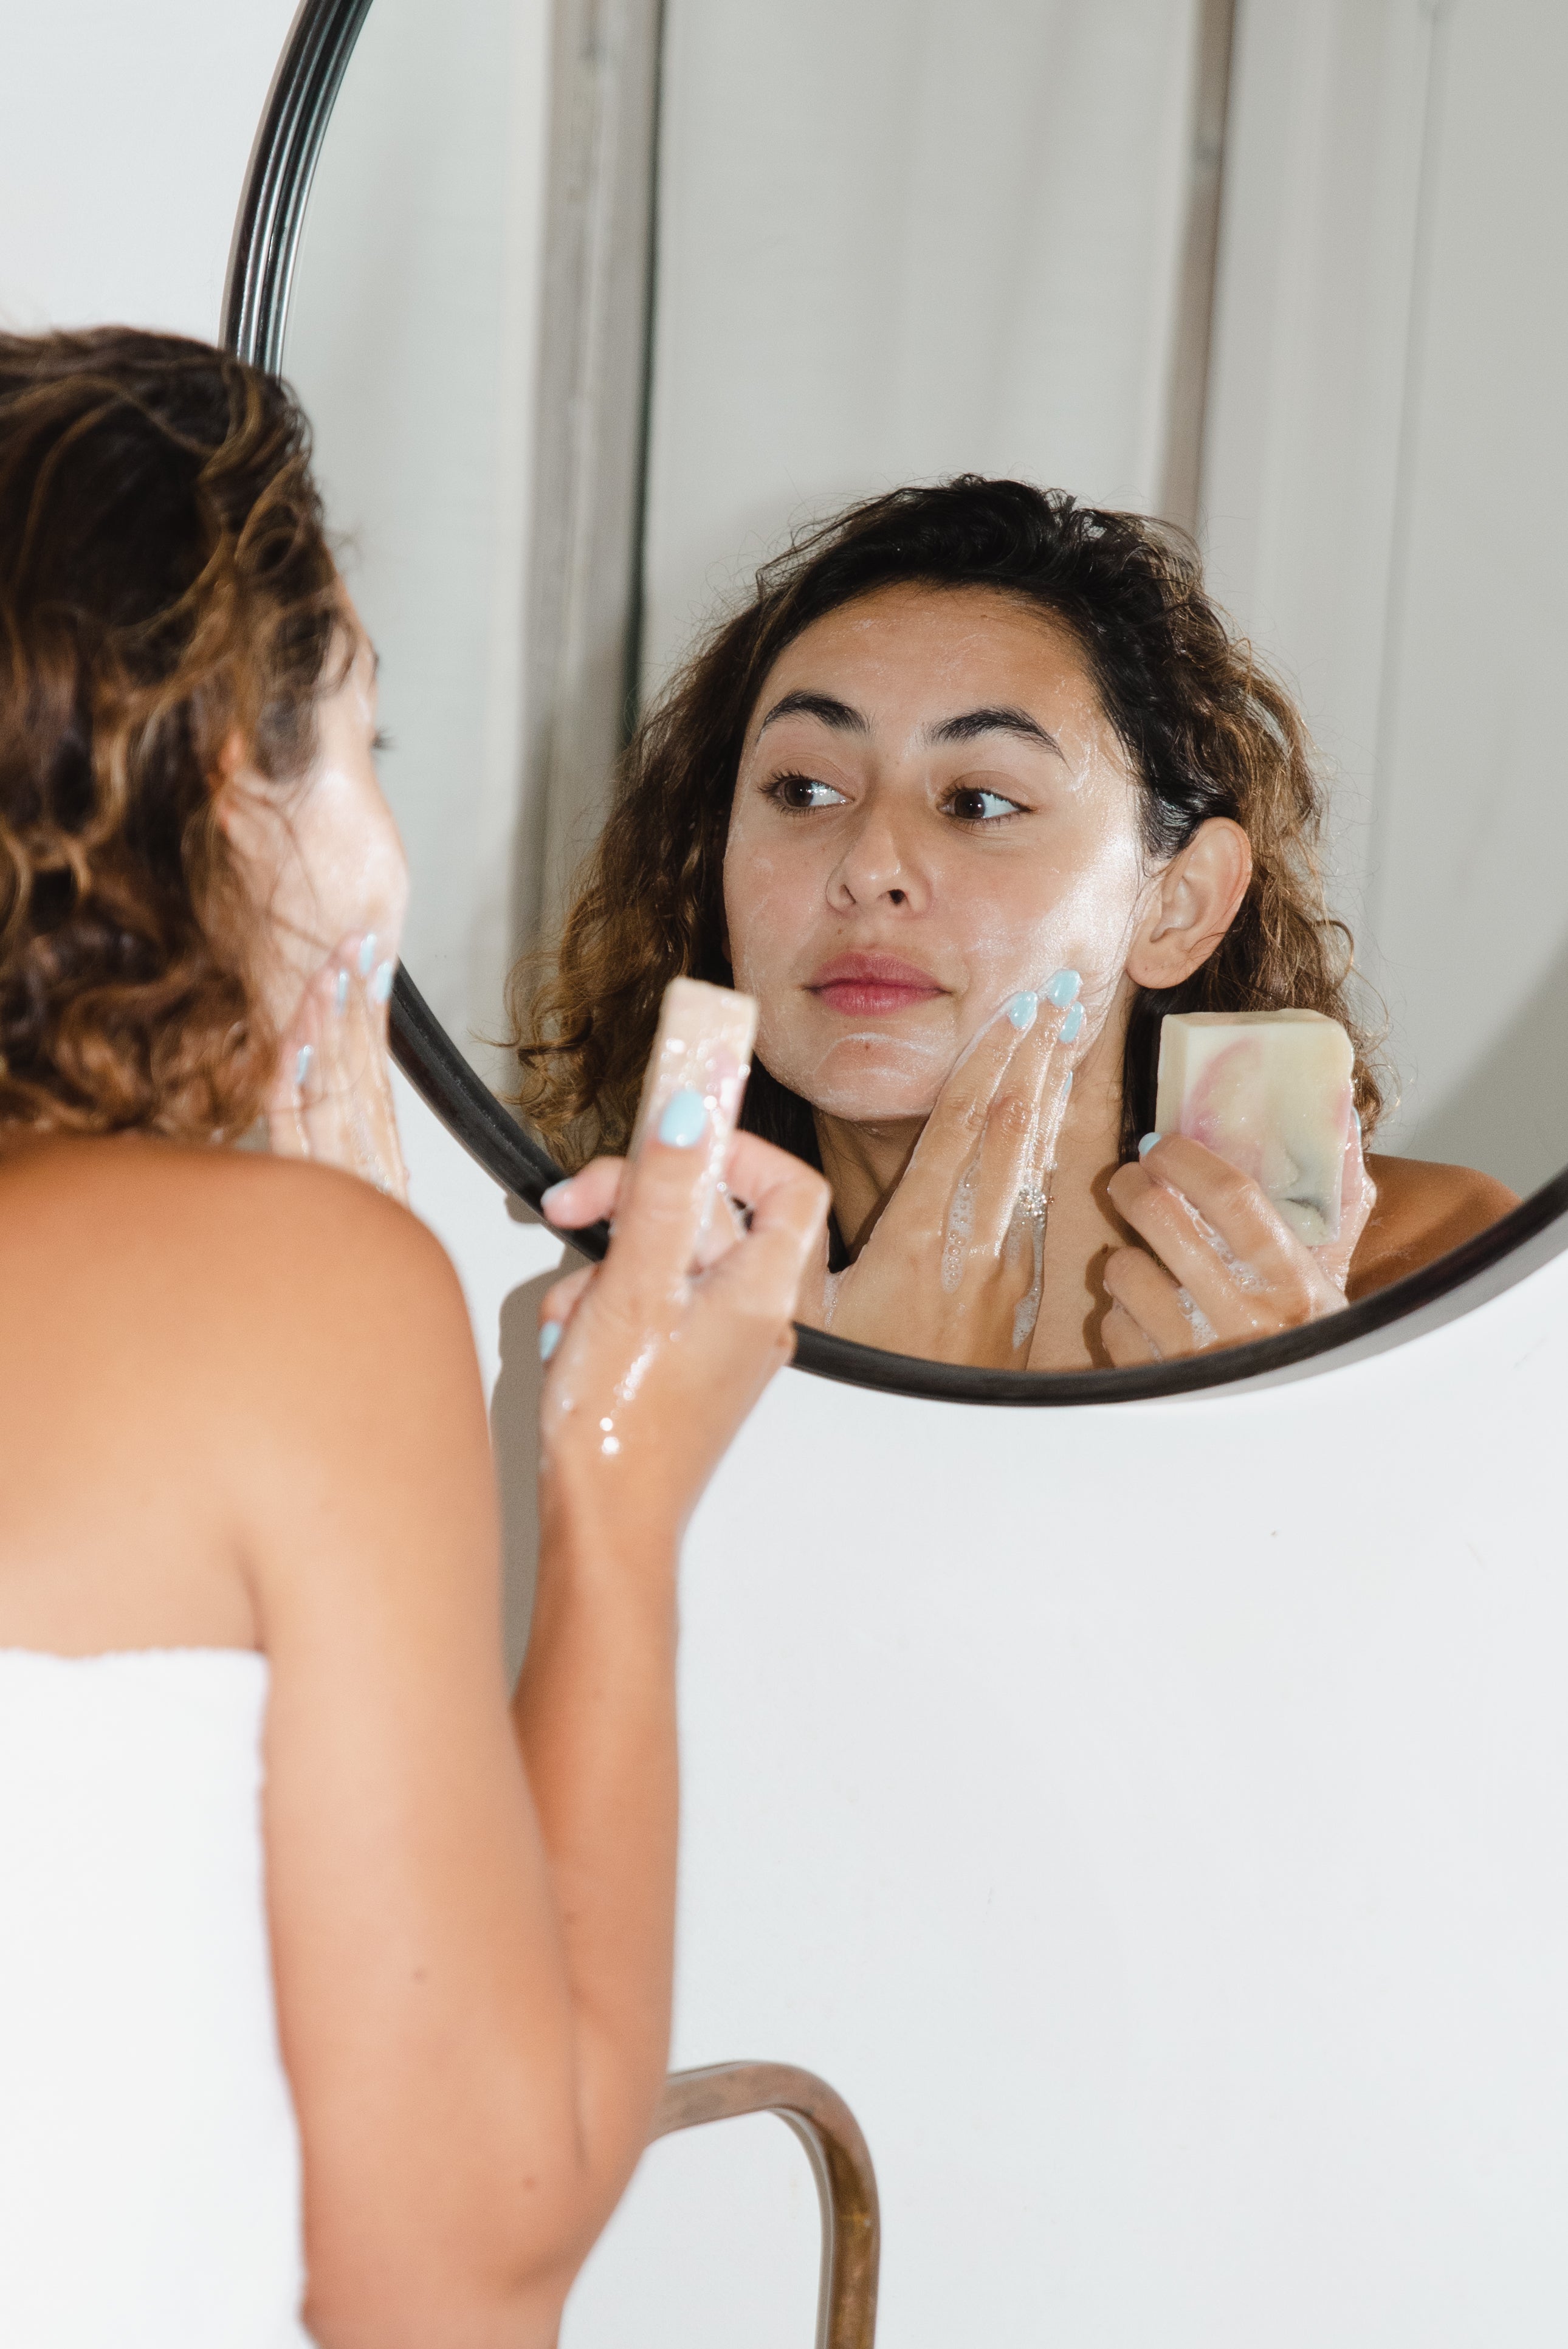 Best Smelling Soap for Women, Body Odor Soap